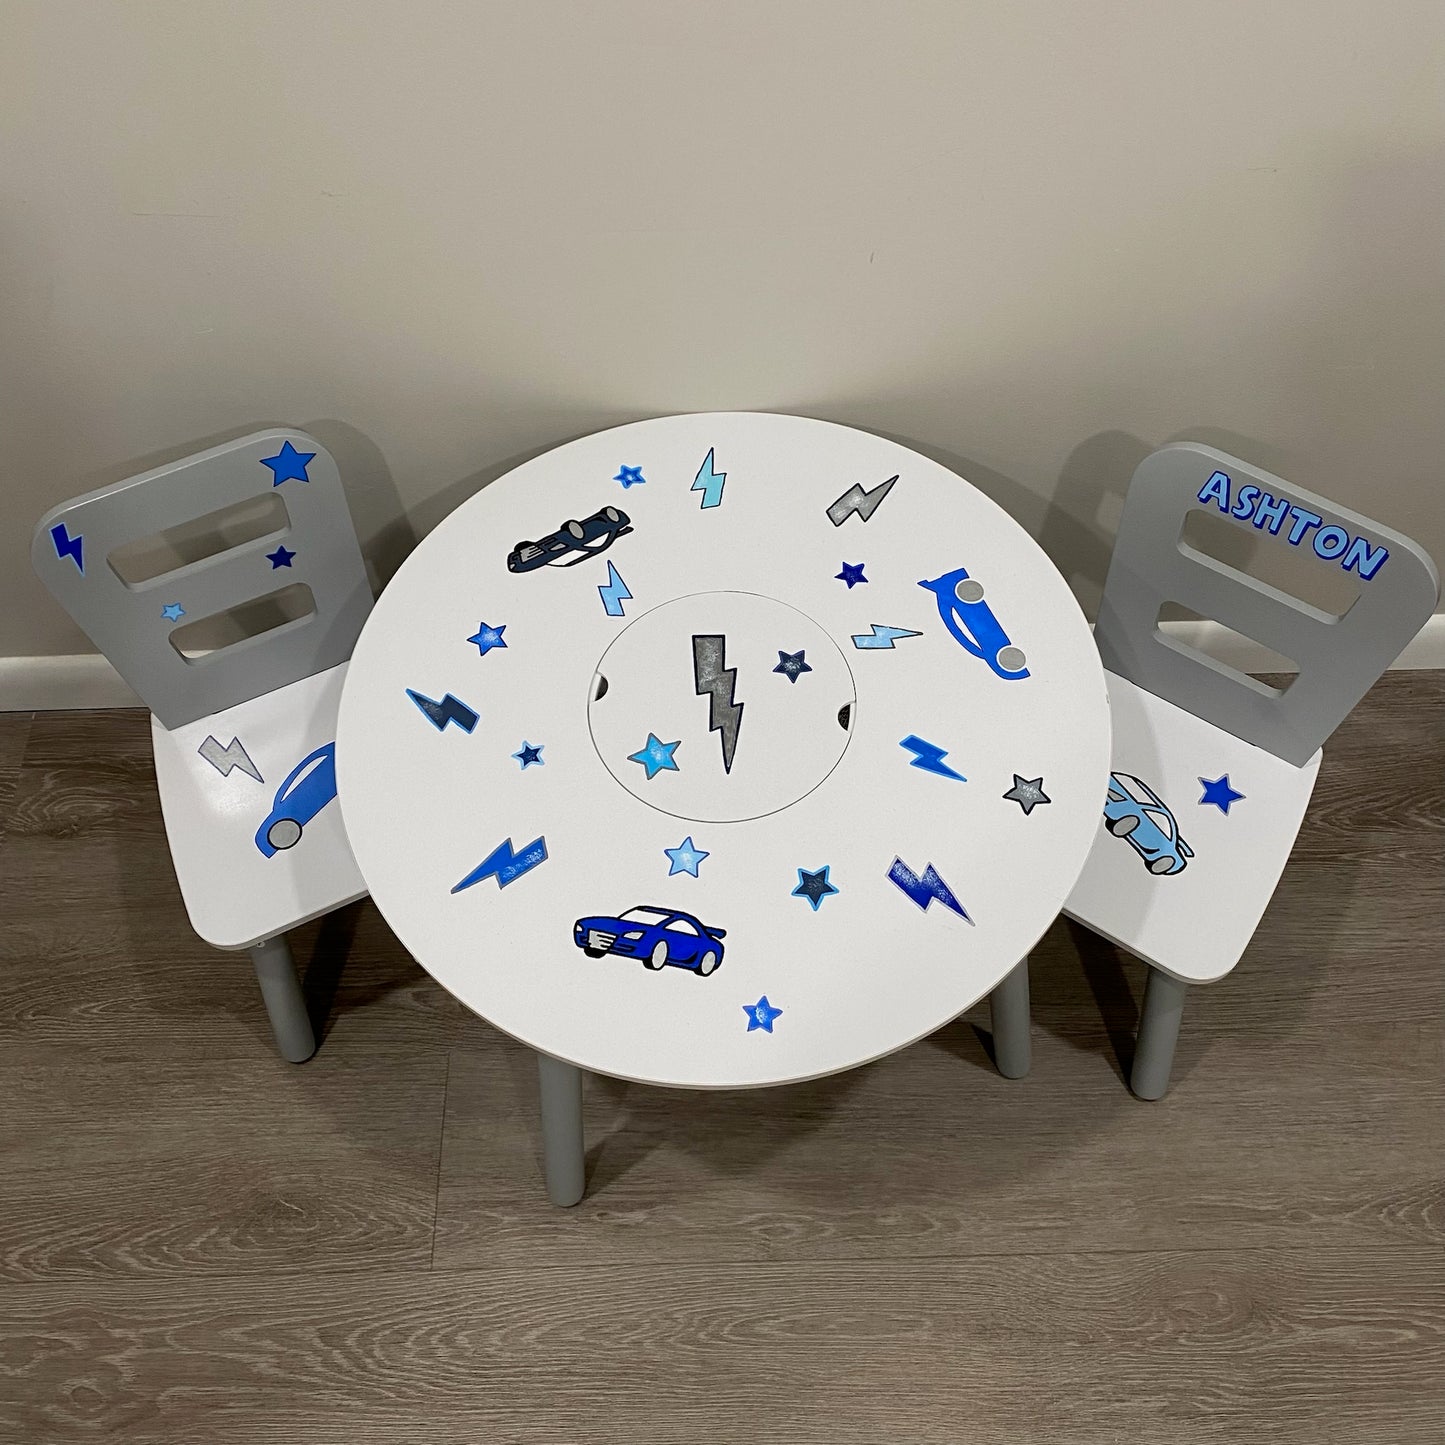 Round Storage Table & 2 Chair Set